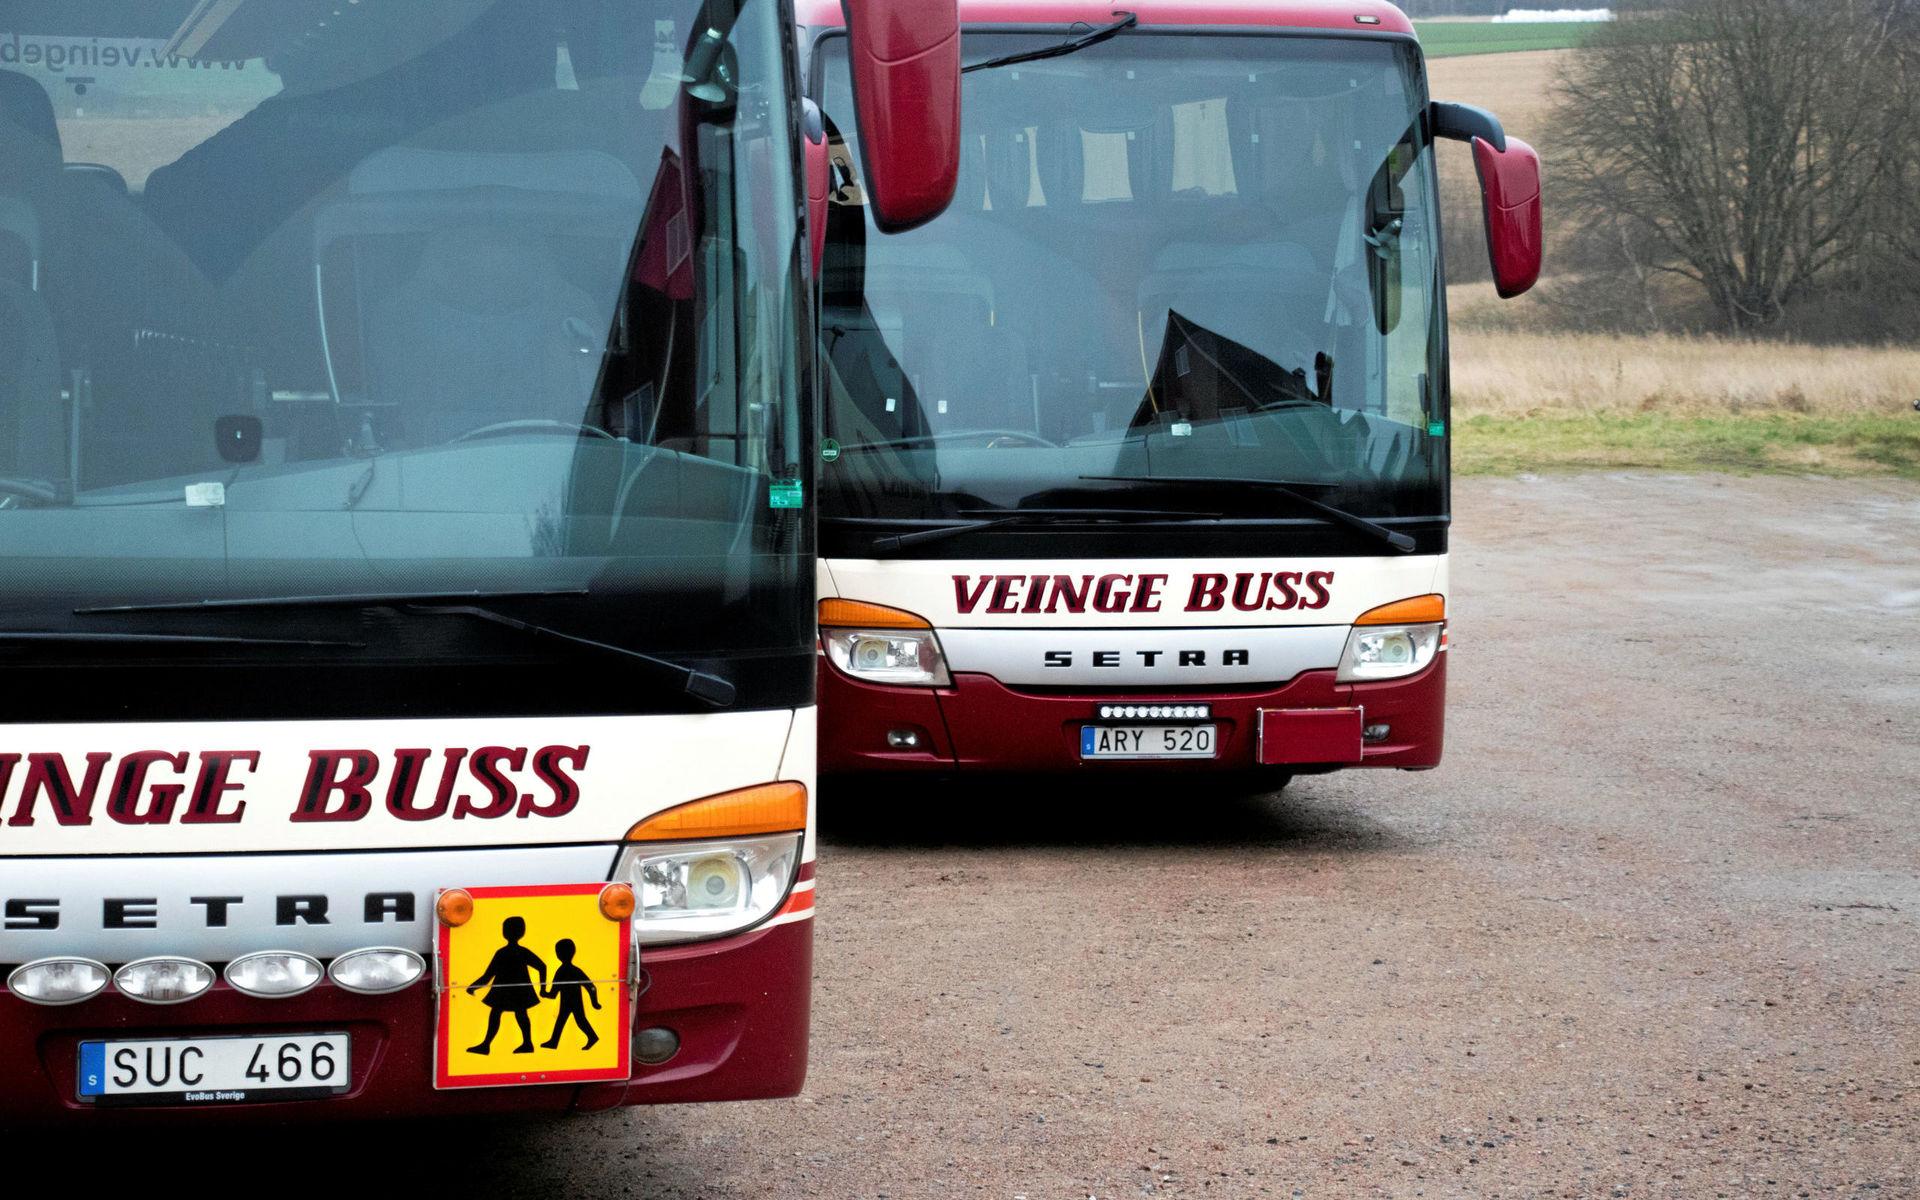 Veinge buss grundades 1927 och har hittills alltid hållit till på Veingevägen 24.